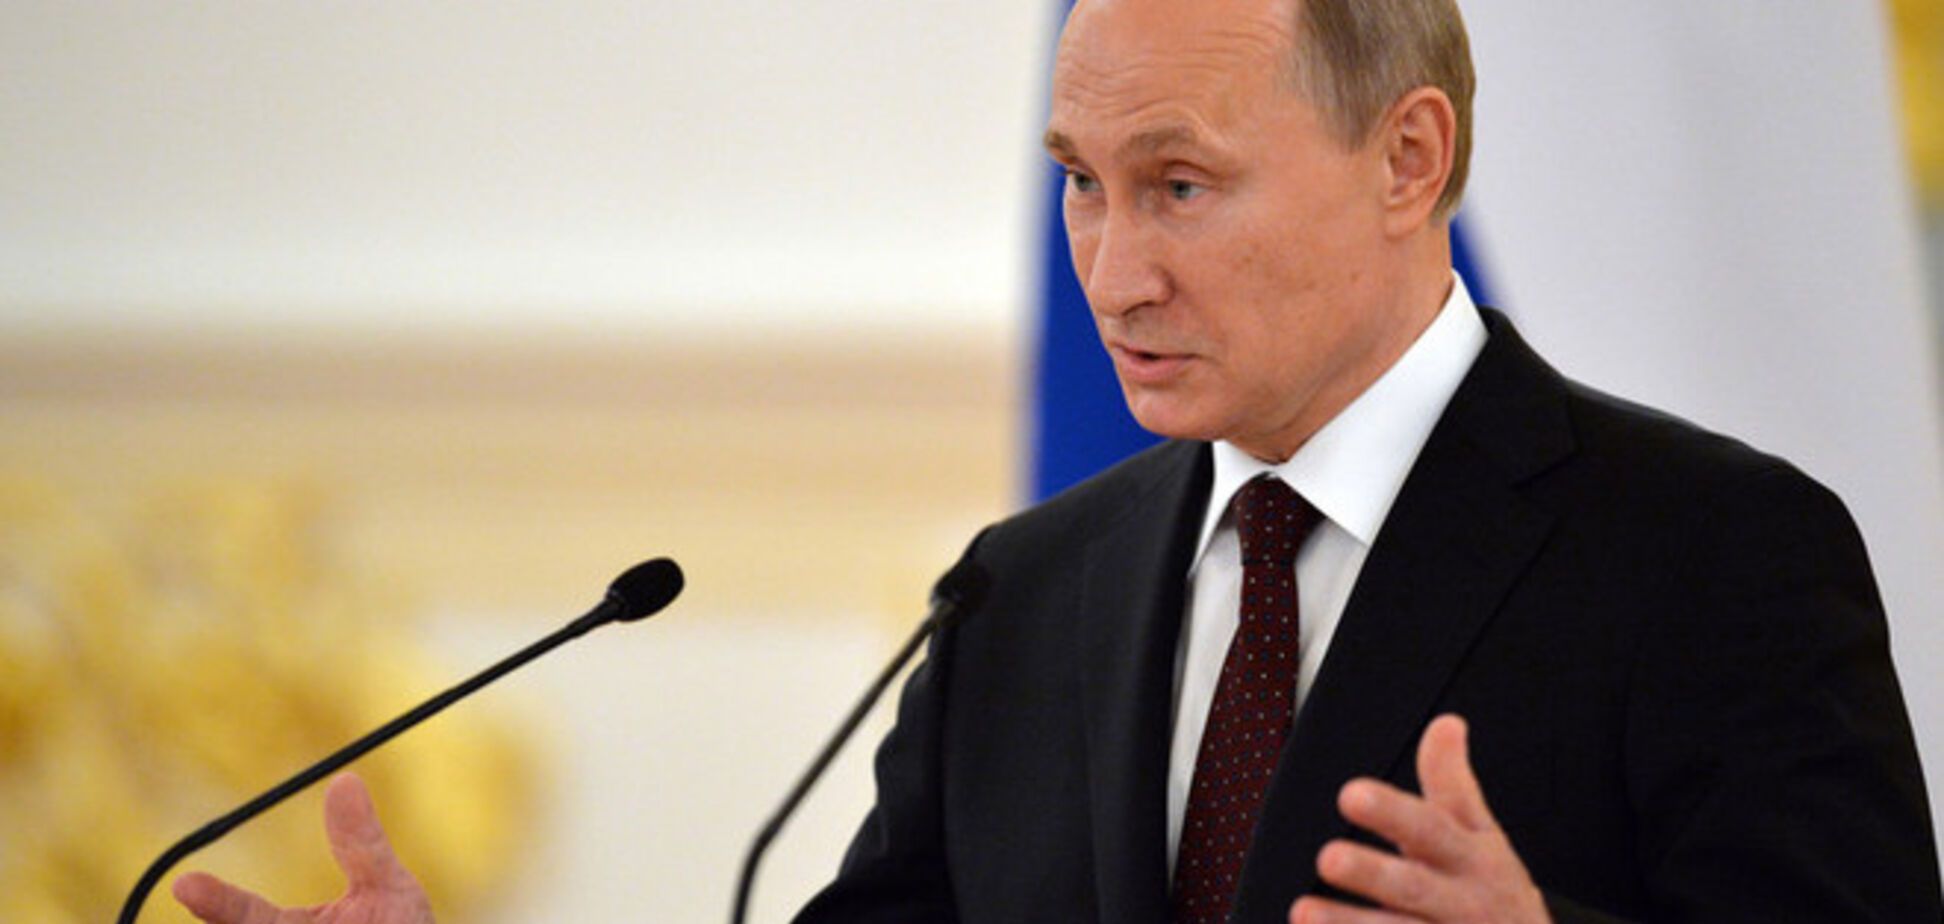 Россияне почти поголовно уверены в авторитете Путина и готовы голосовать за него снова - опрос